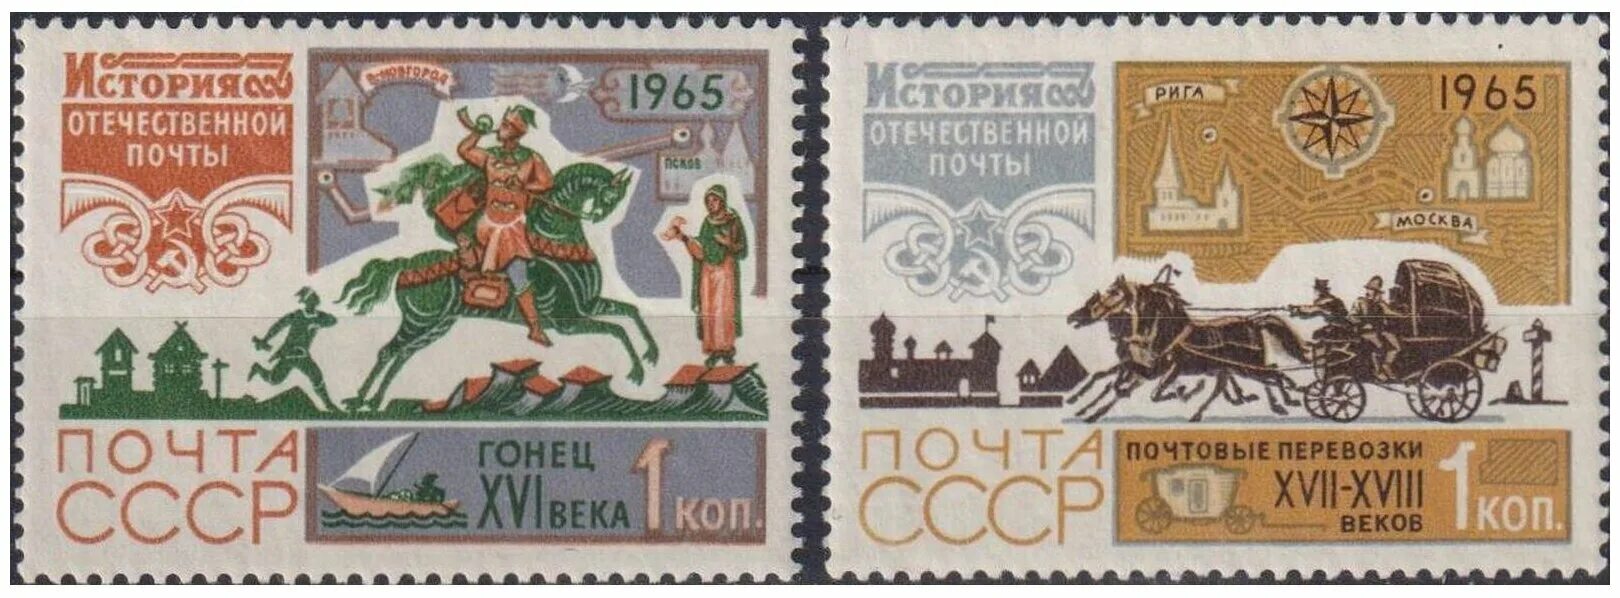 Основание российской регулярной почты год